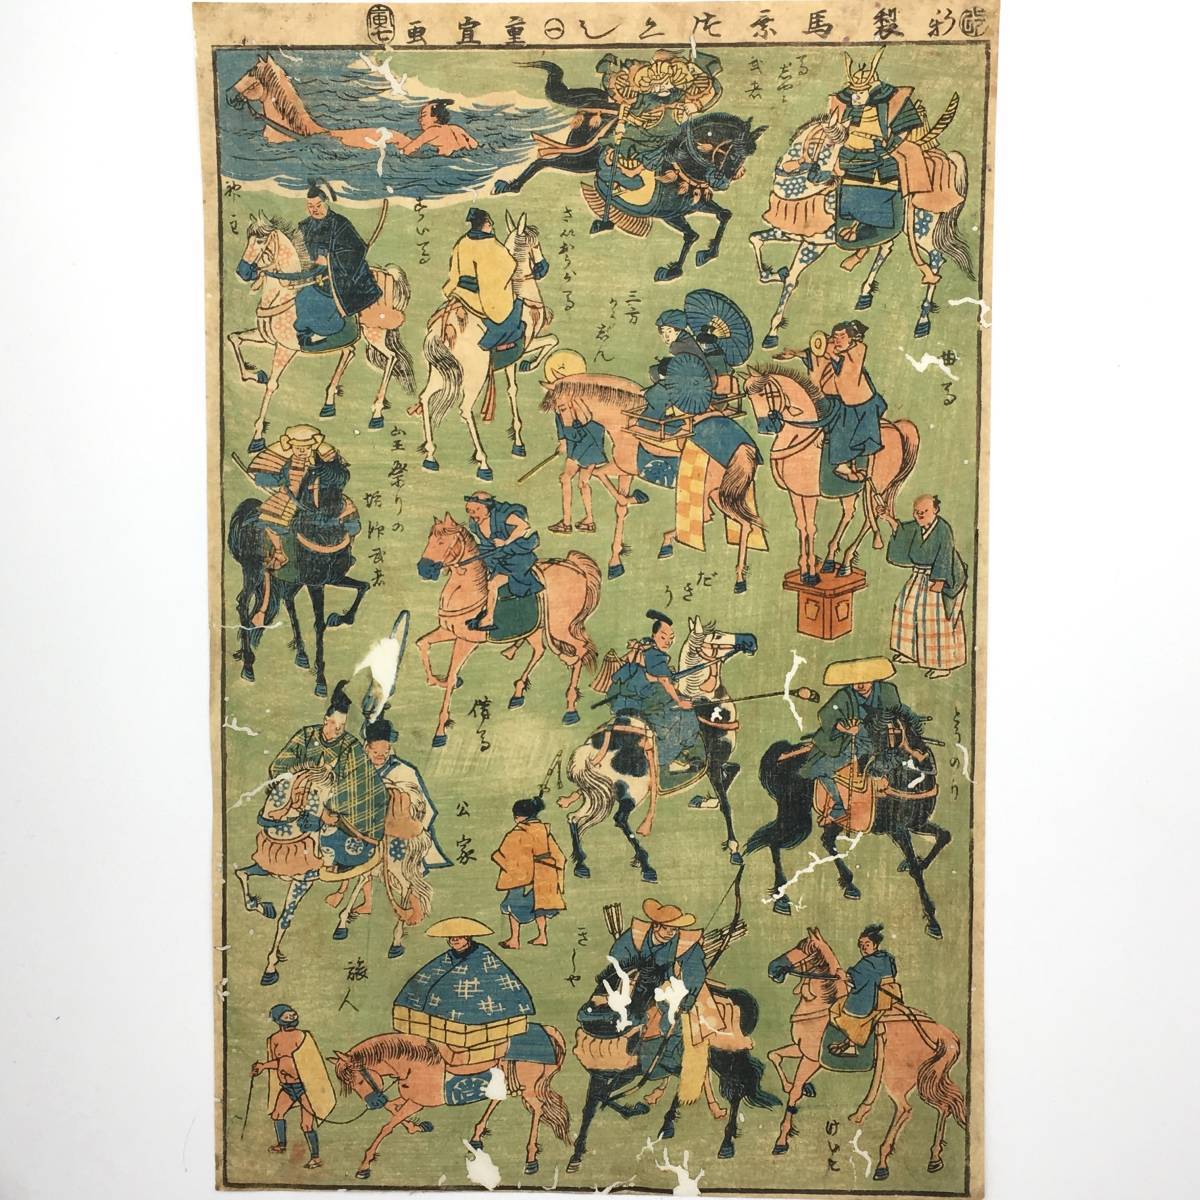 [二代广重(重信)] 新作 骑马场景 1 1855 大幅面锦绘玩具画 时代作品/浮世绘木版画/骑马场景, 绘画, 浮世绘, 印刷, 其他的